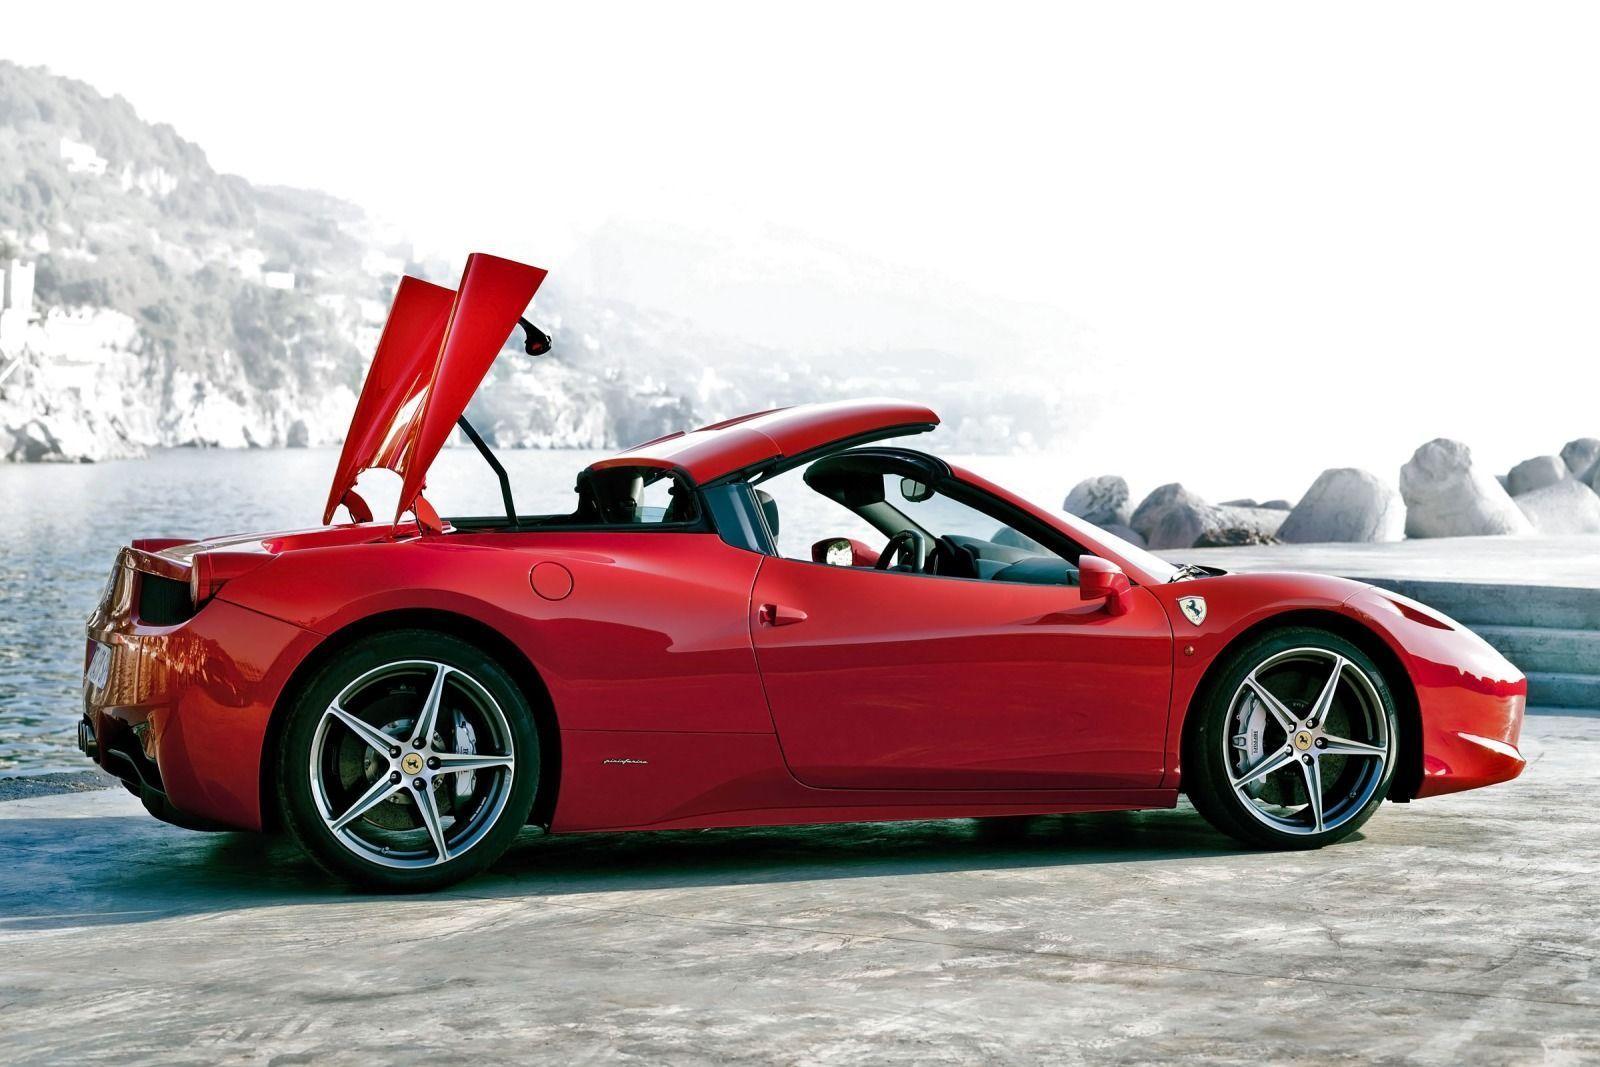 Ferrari 458 Italia Wallpaper Desktop HD. New Car Concepts